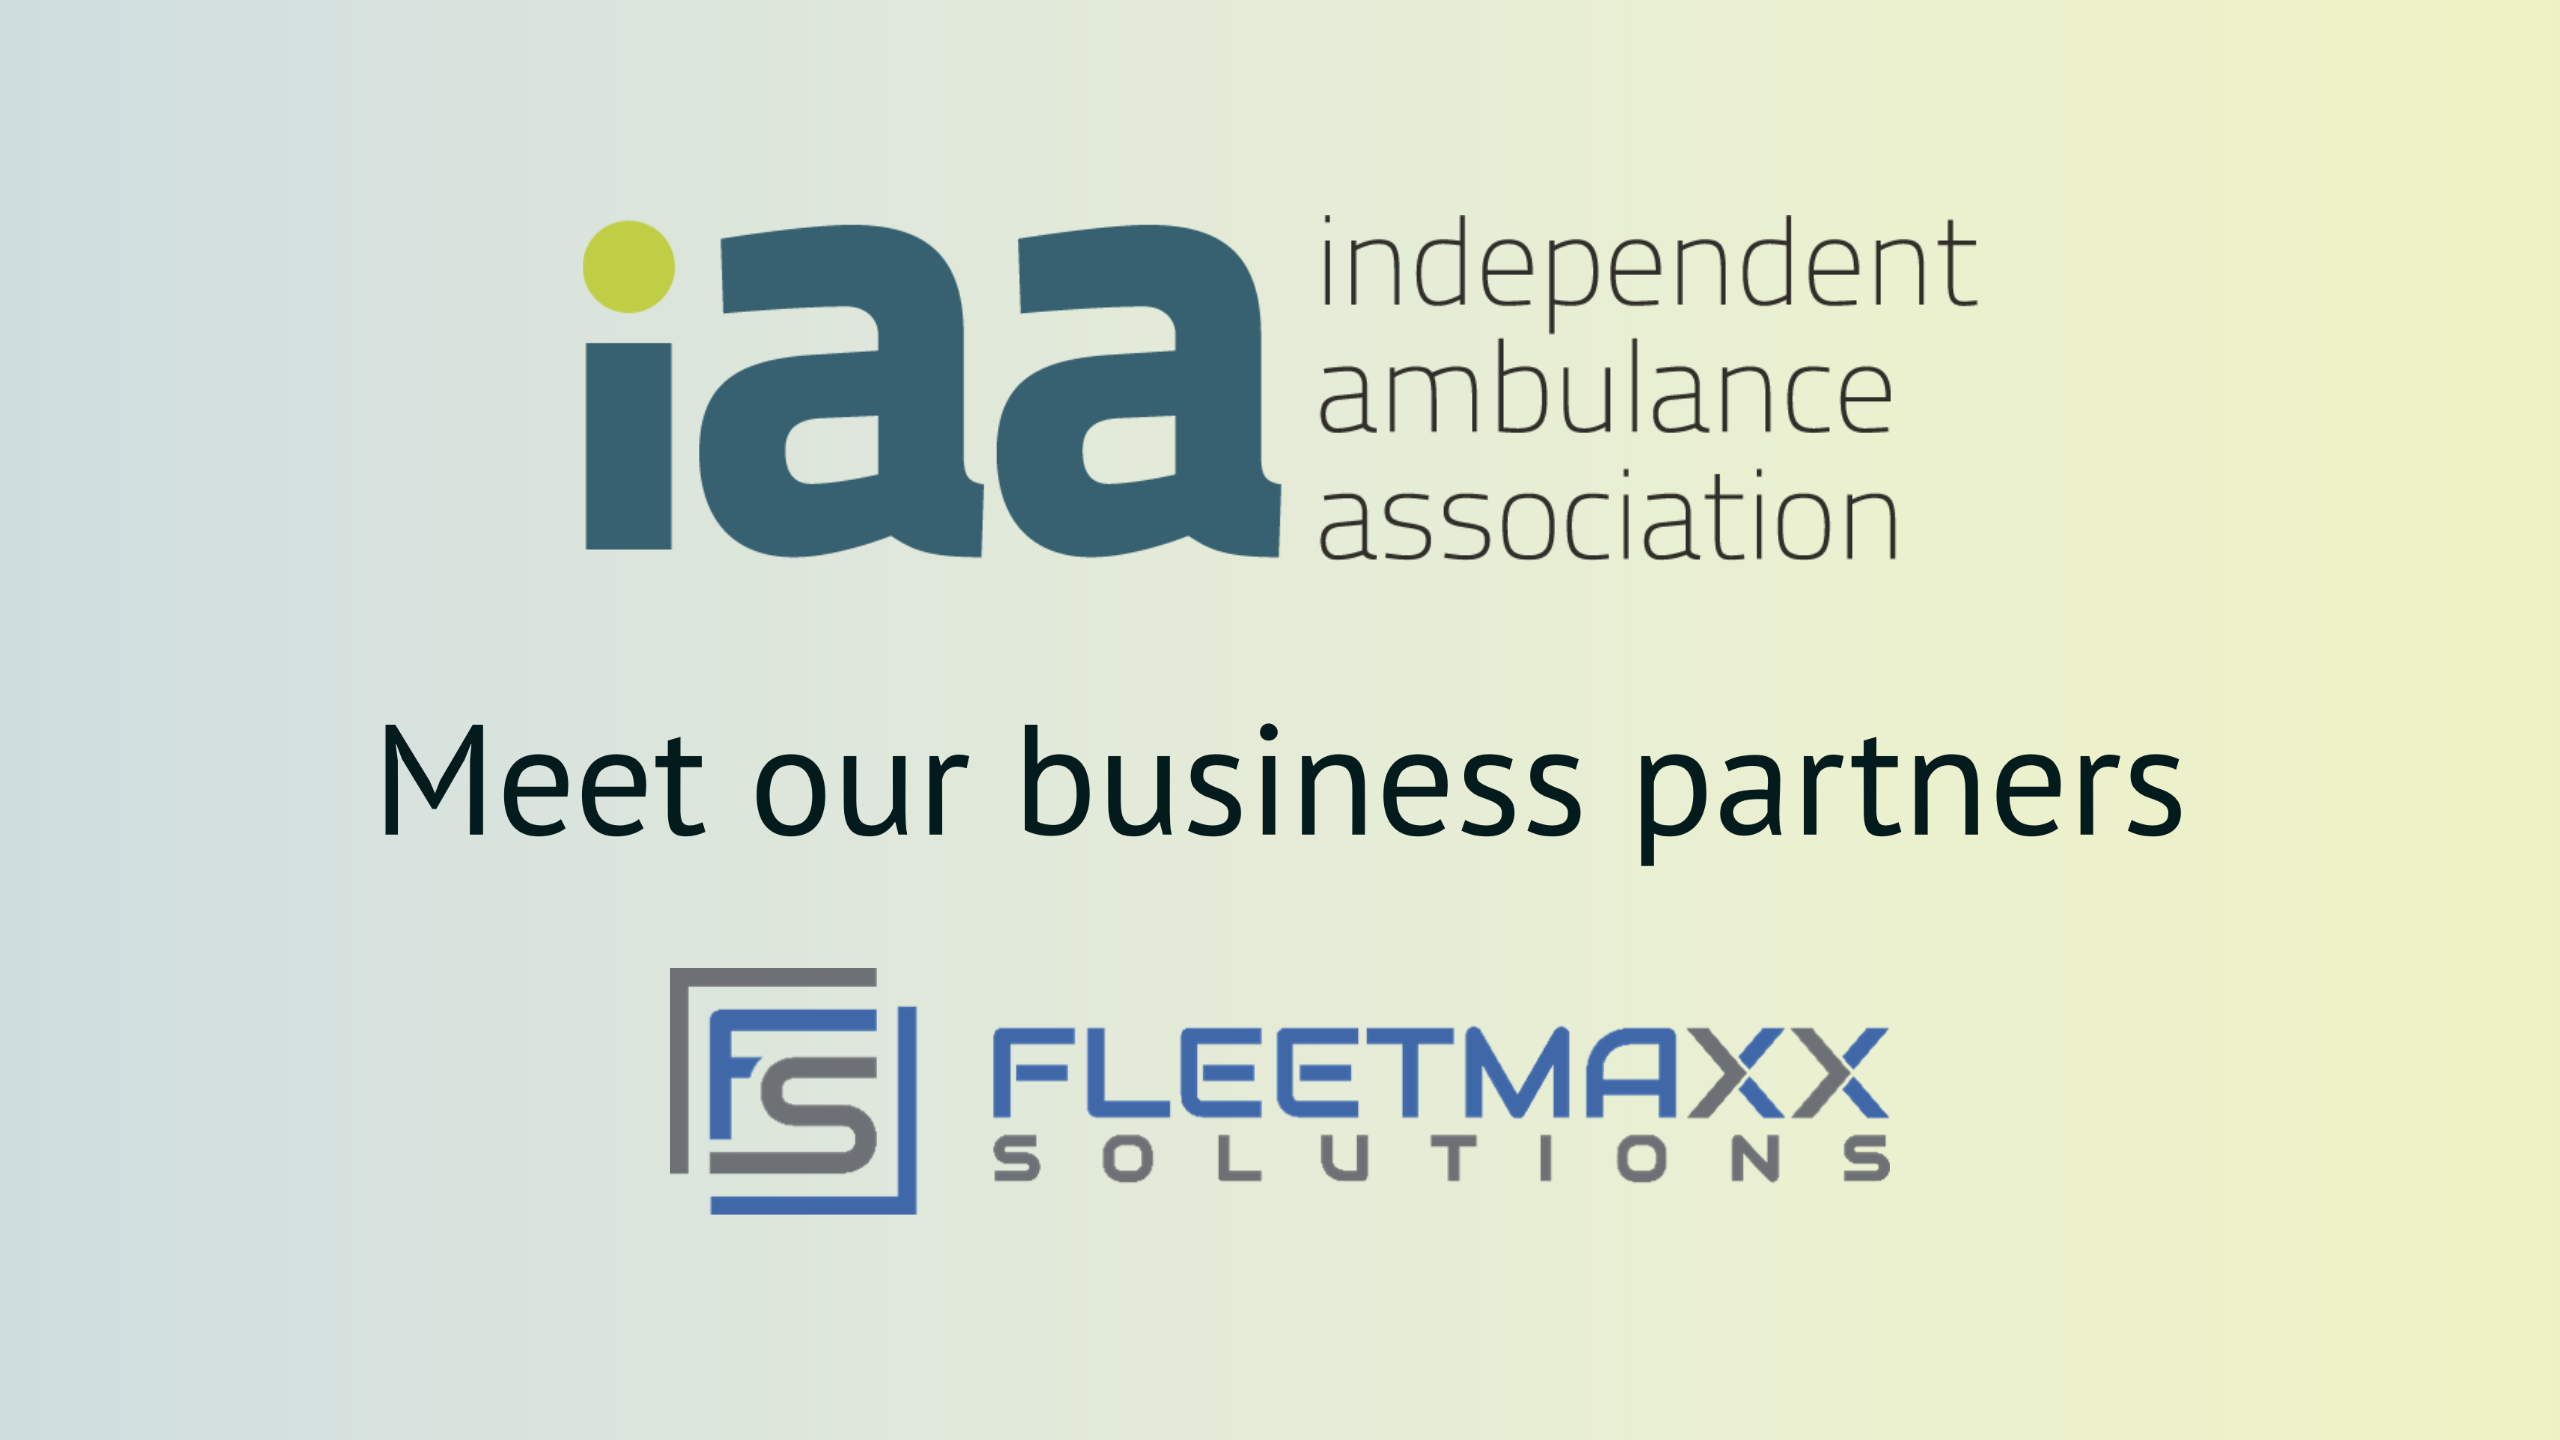 Meet our business partners - Fleetmaxx